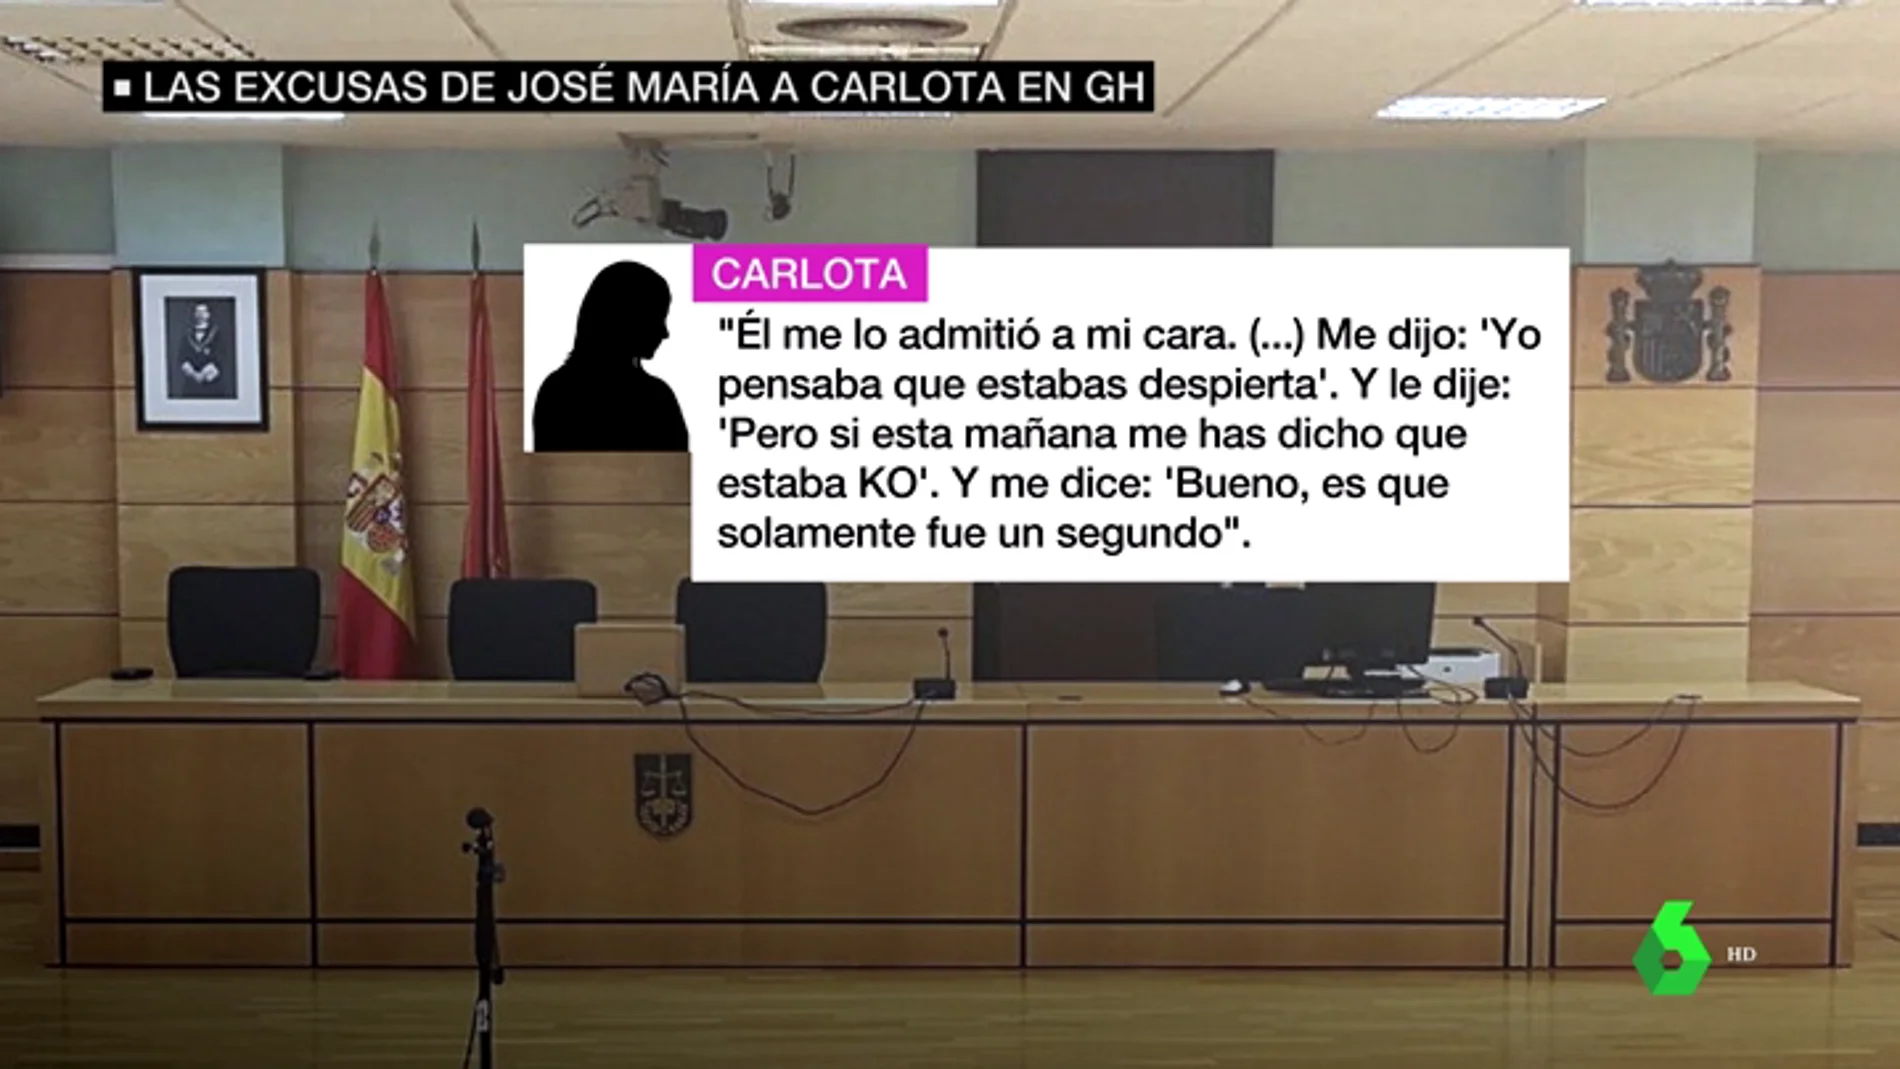 Gran Hermano reunió a Carlota y José María en una habitación tras el presunto abuso sexual: "Él me lo admitió a mi cara"